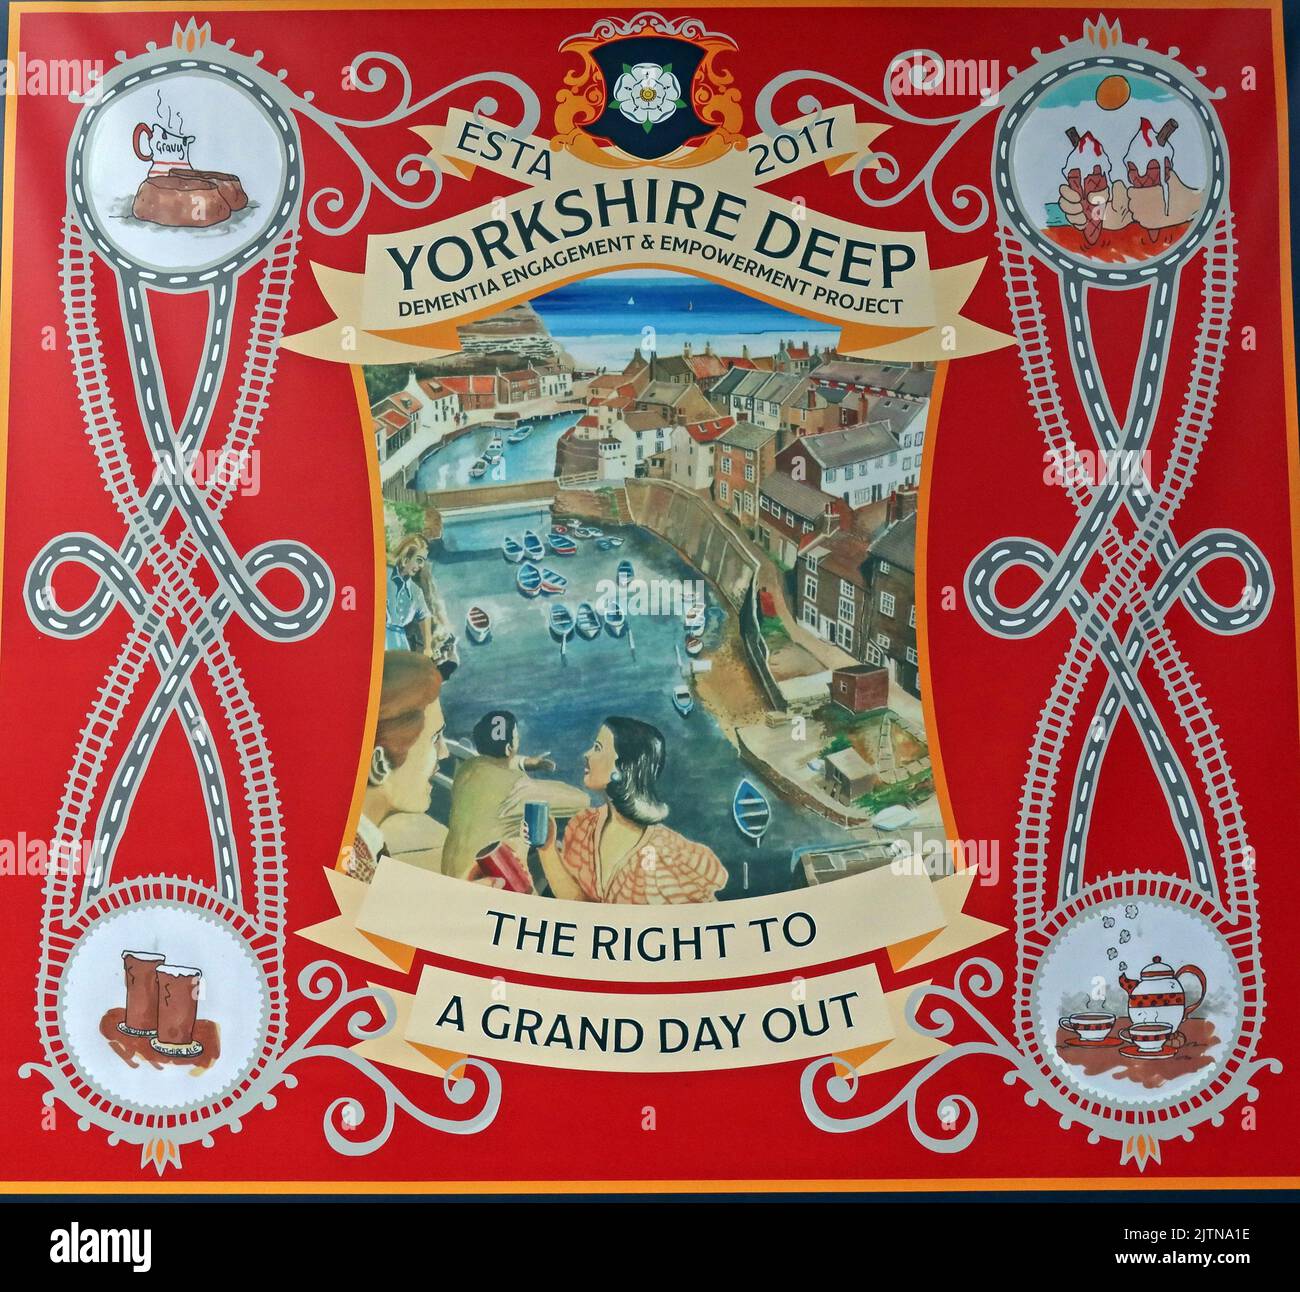 Bannières pour l'espoir et le changement - Yorkshire Deep - le droit à une journée de découverte - projet d'engagement et d'autonomisation de la démence - Esta 2017 Banque D'Images